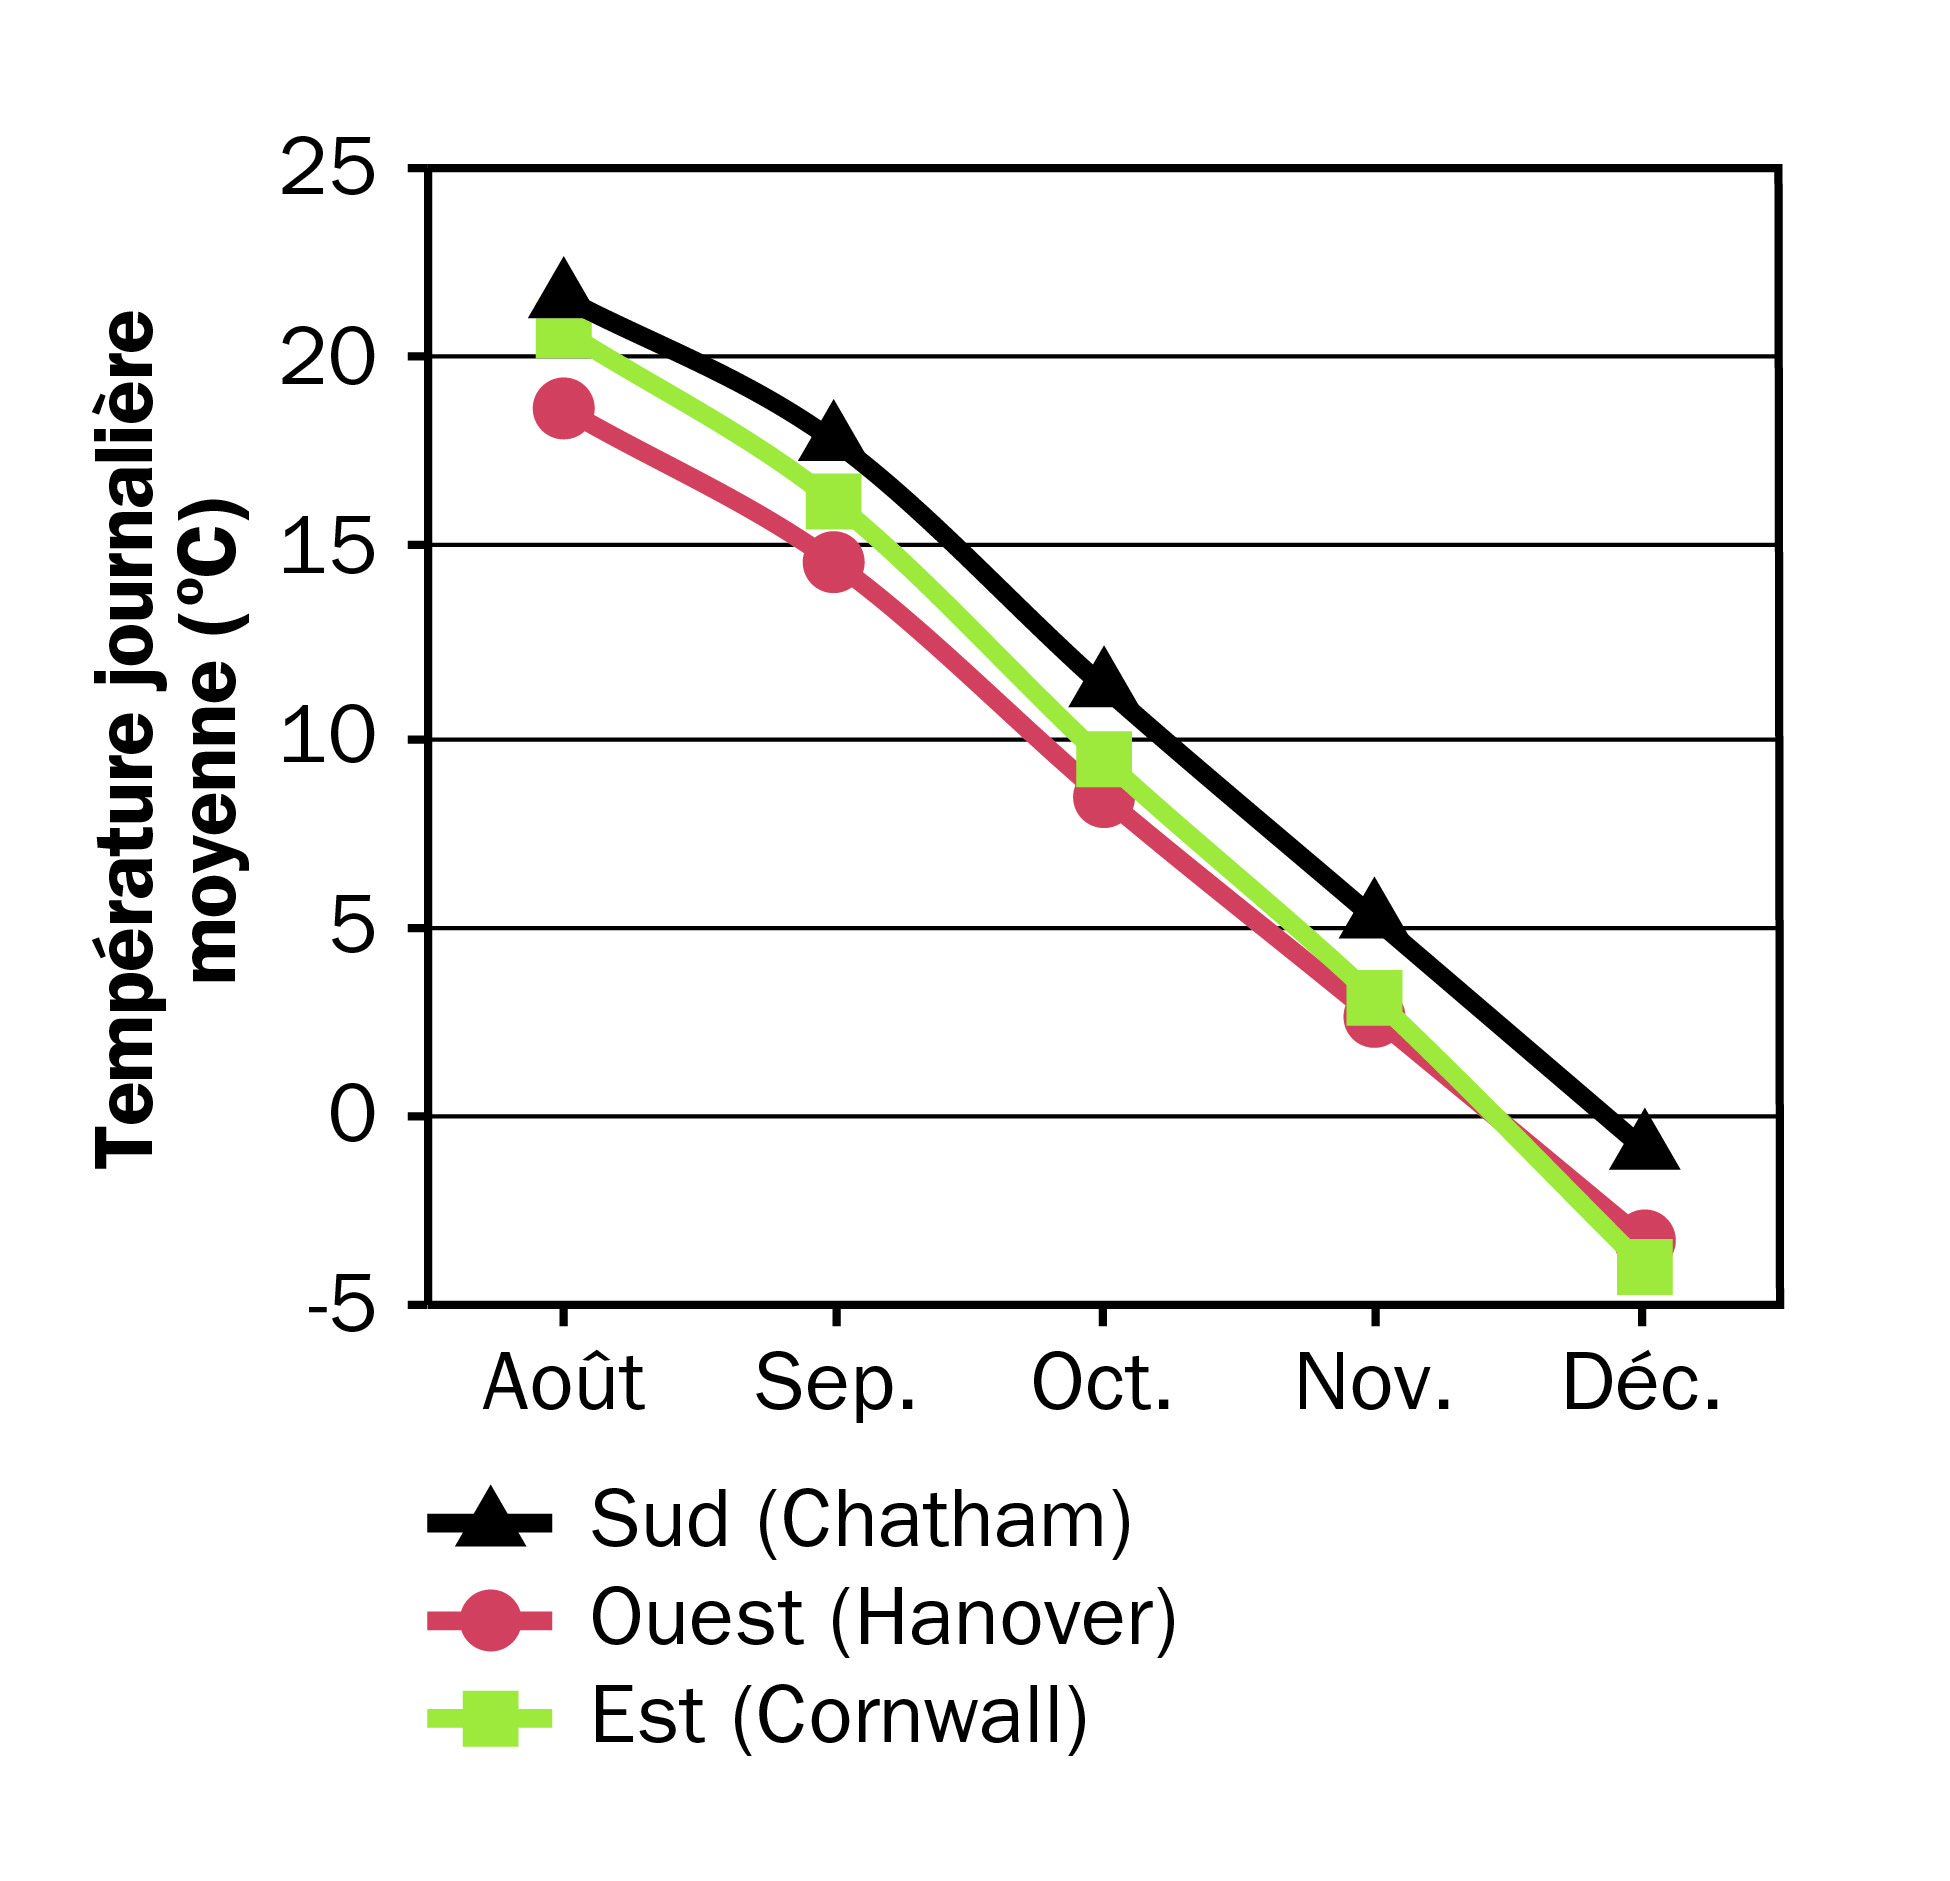 Graphique des moyennes mensuelles des températures ambiantes d’août à décembre à Chatham, Hanover et Cornwall en Ontario